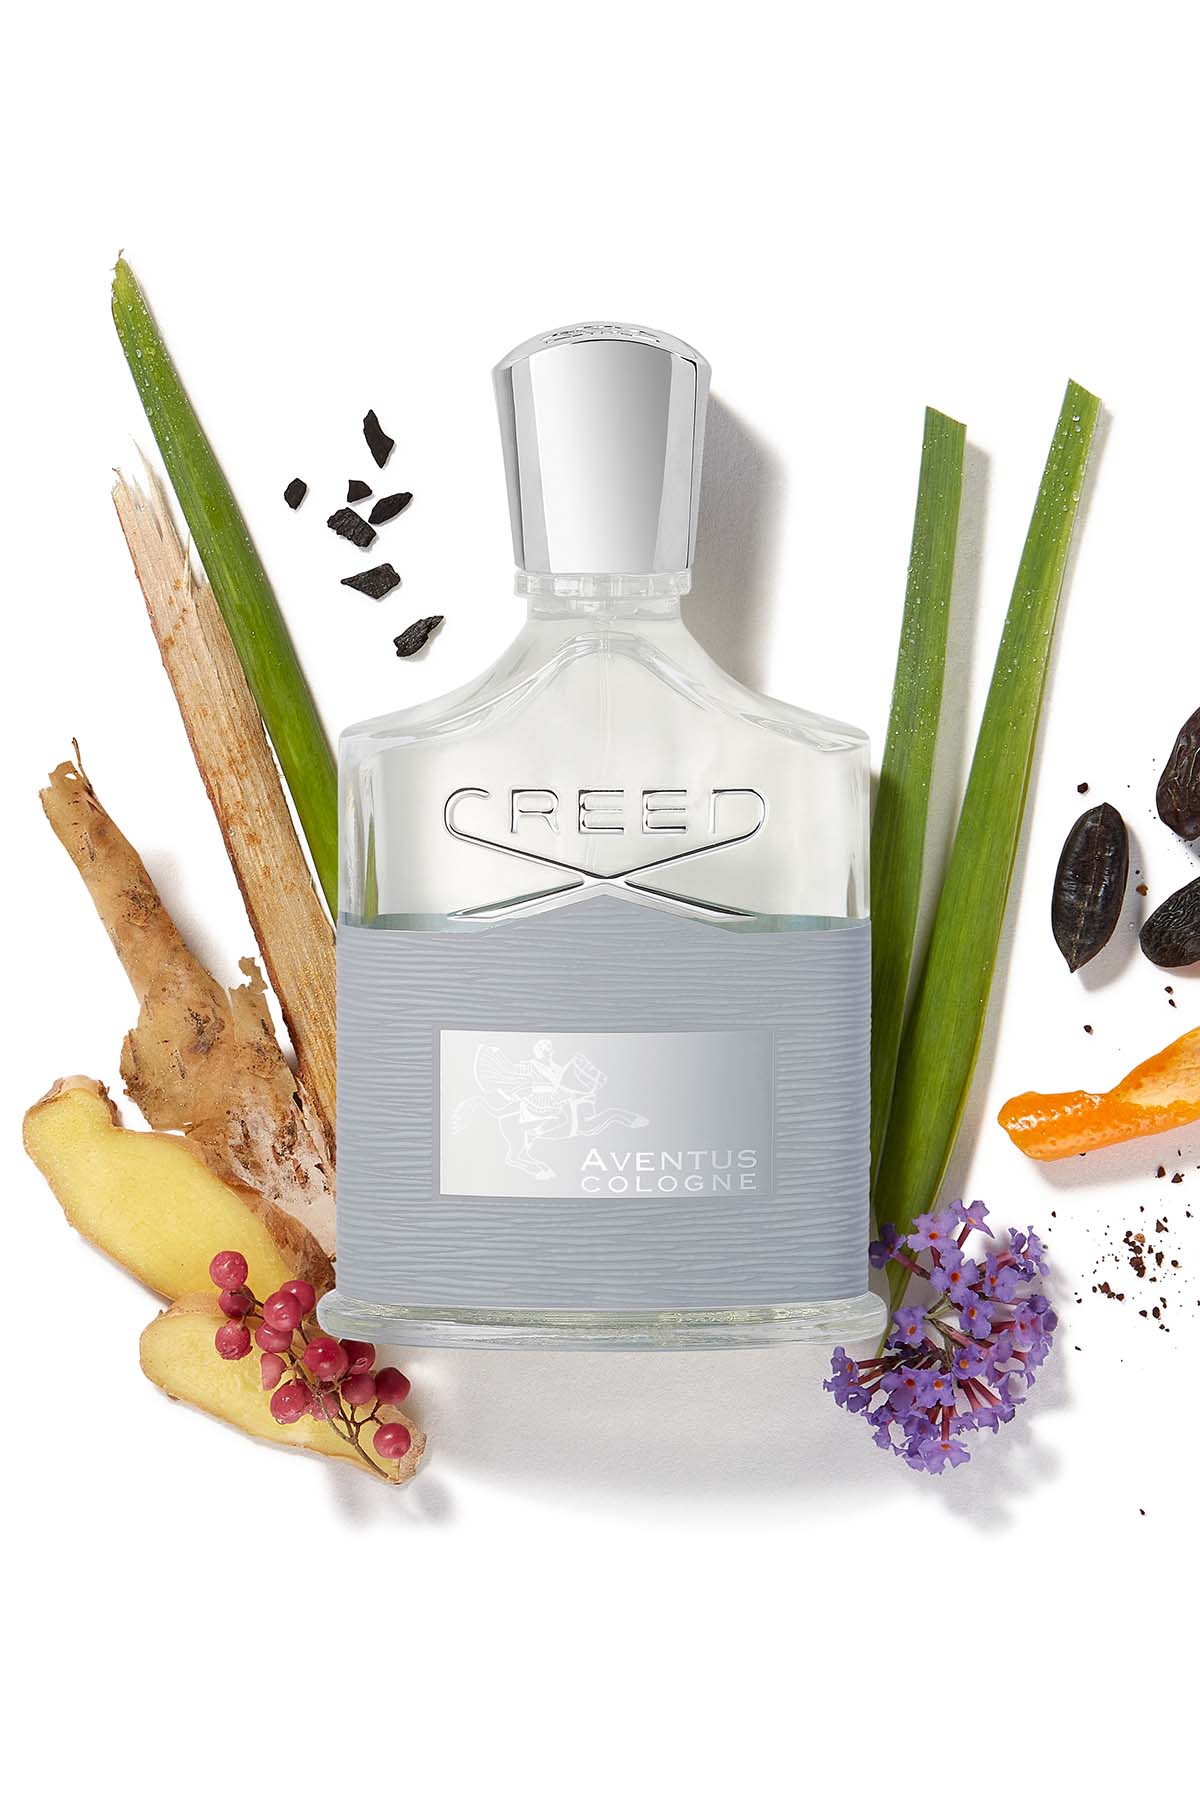 Creed Aventus Cologne Eau de Parfum Ingredients